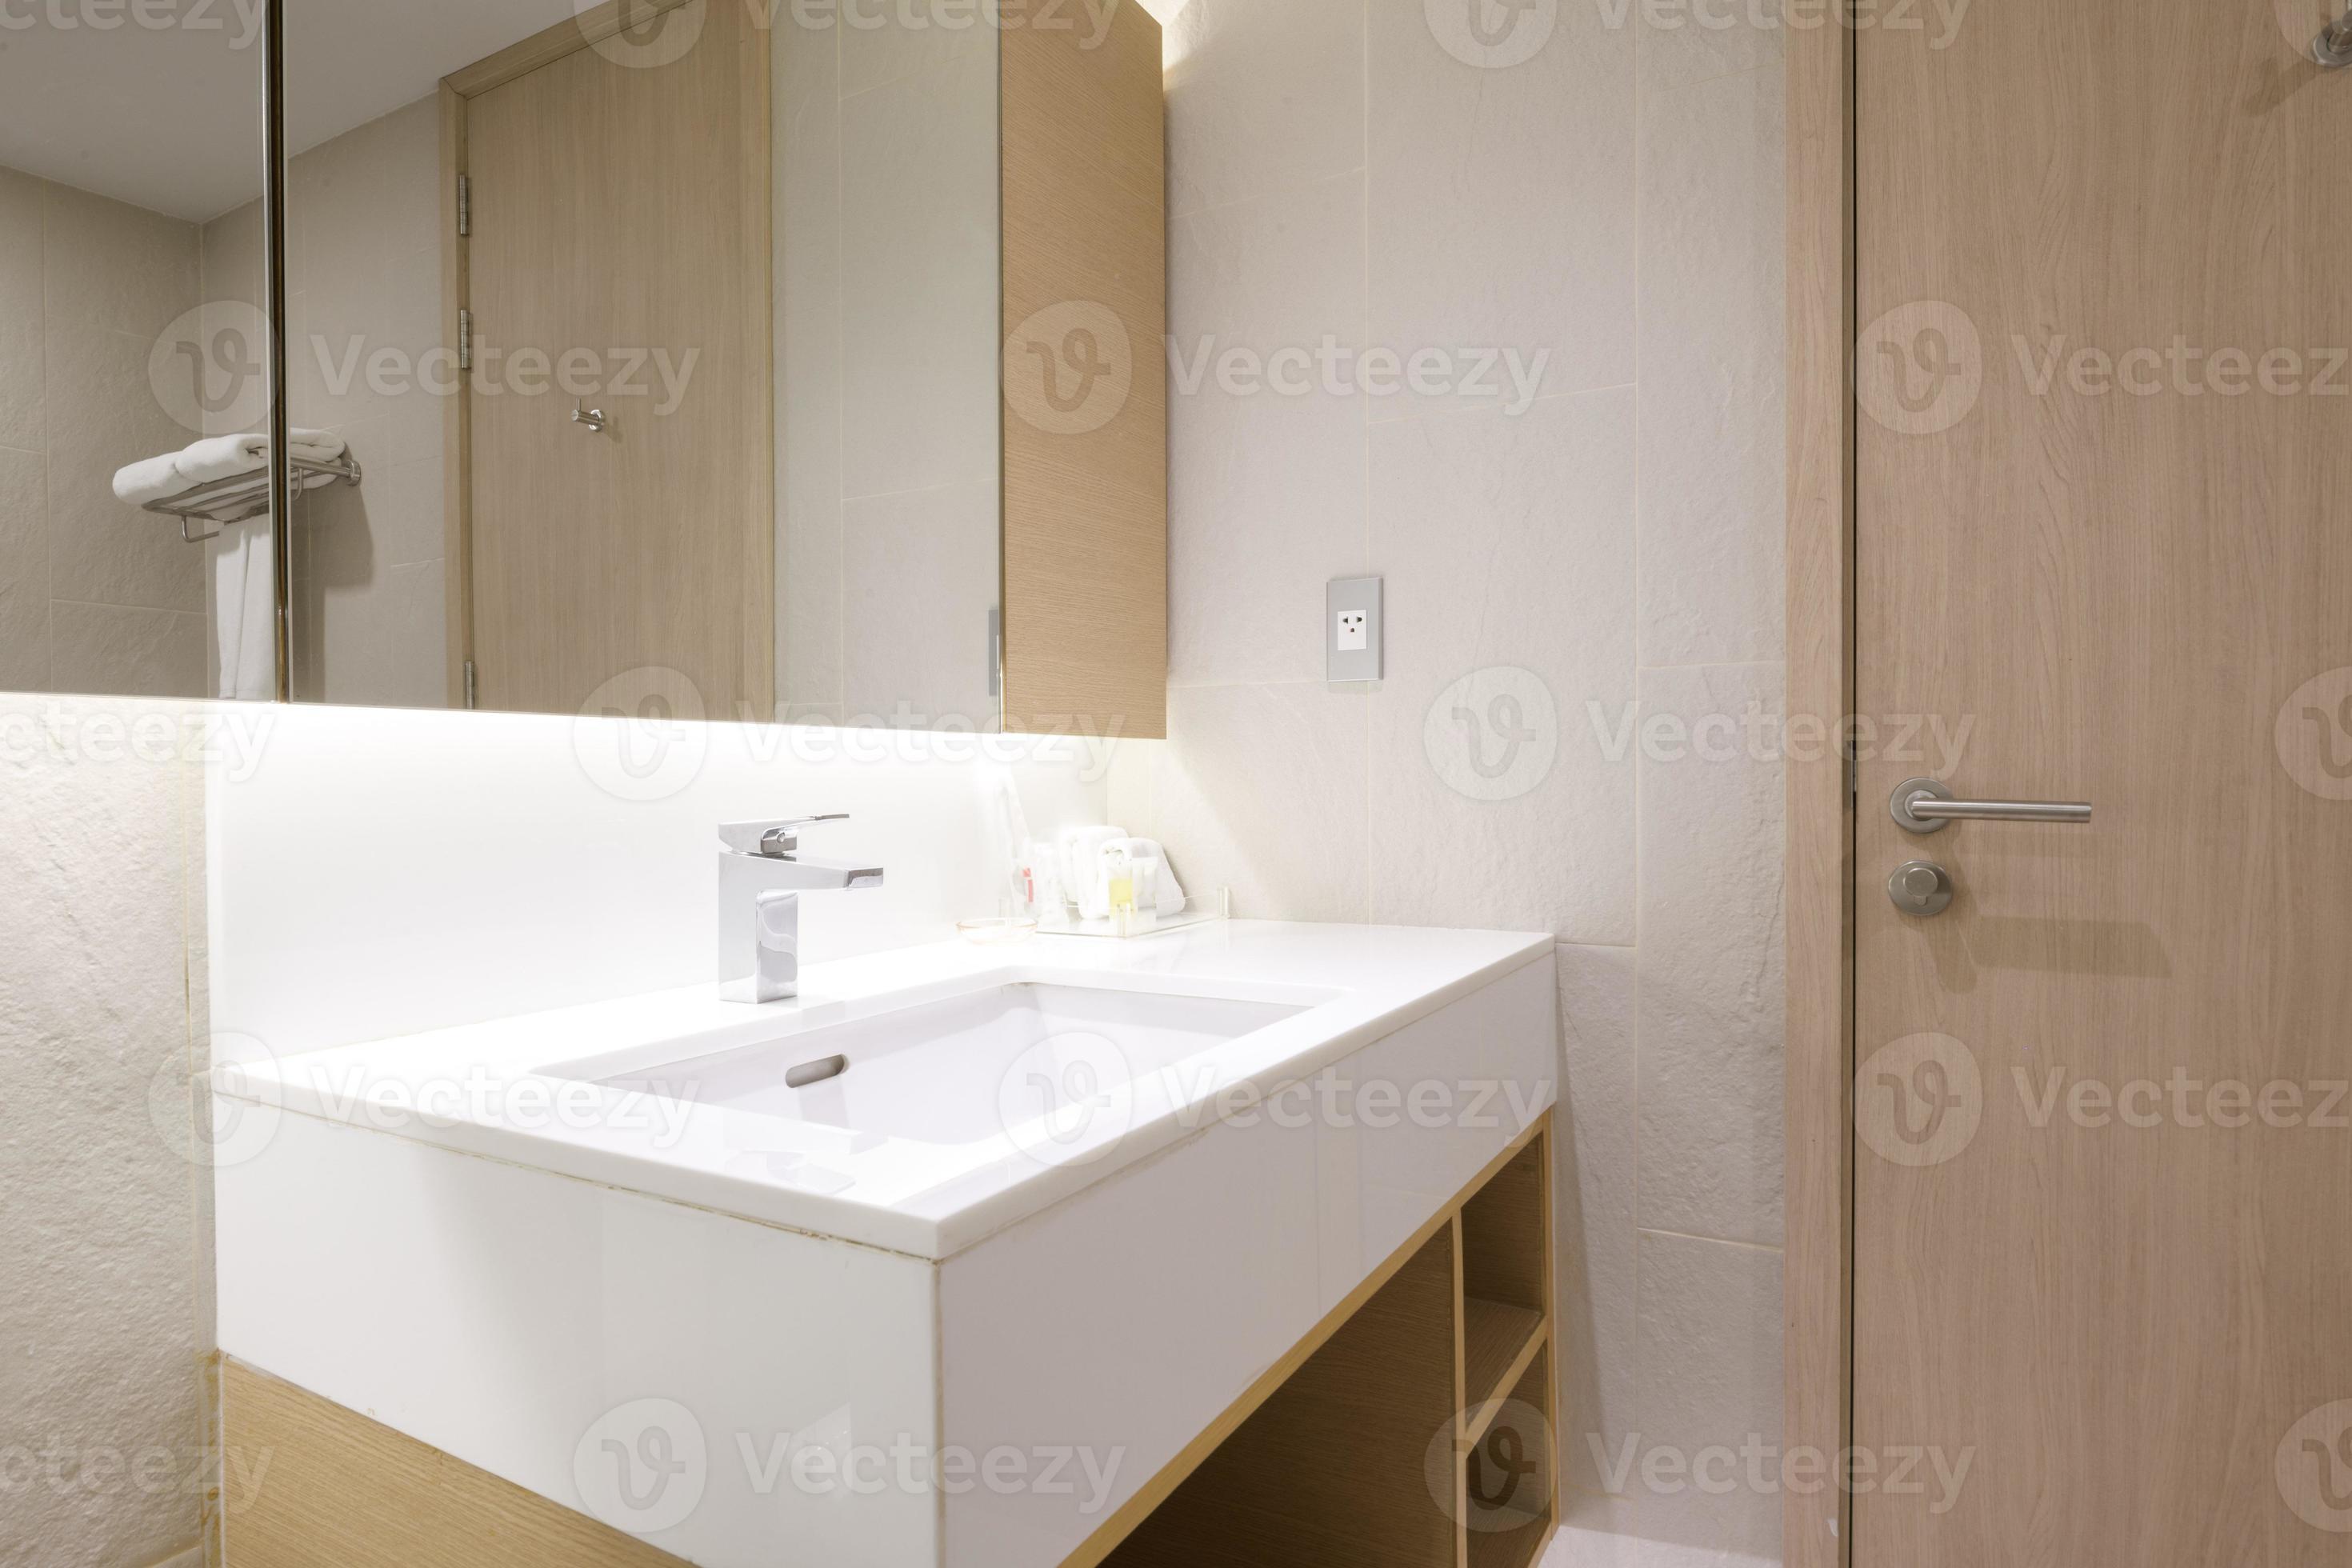 bundel Helder op diagonaal zolder wit tegel badkamer hoek, kuip en wastafel 15748678 stockfoto bij  Vecteezy